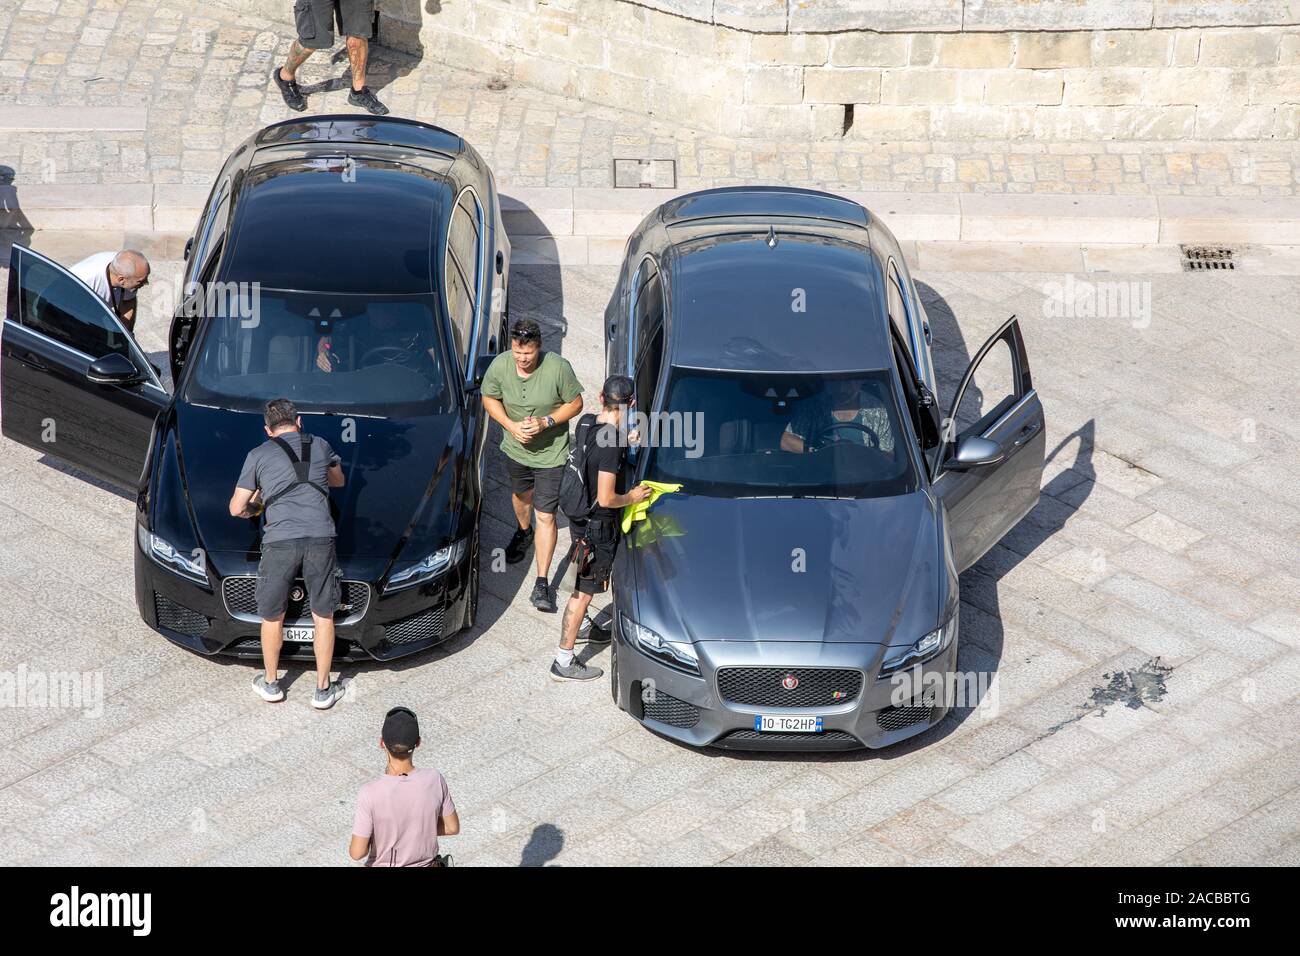 Matera, Italien - September 15, 2019: Bond 25, Jaguar Cars bereit, die Szenen aus dem Film "keine Zeit" in Sassi, Matera, Italien zu sterben, um zu schießen. Stockfoto